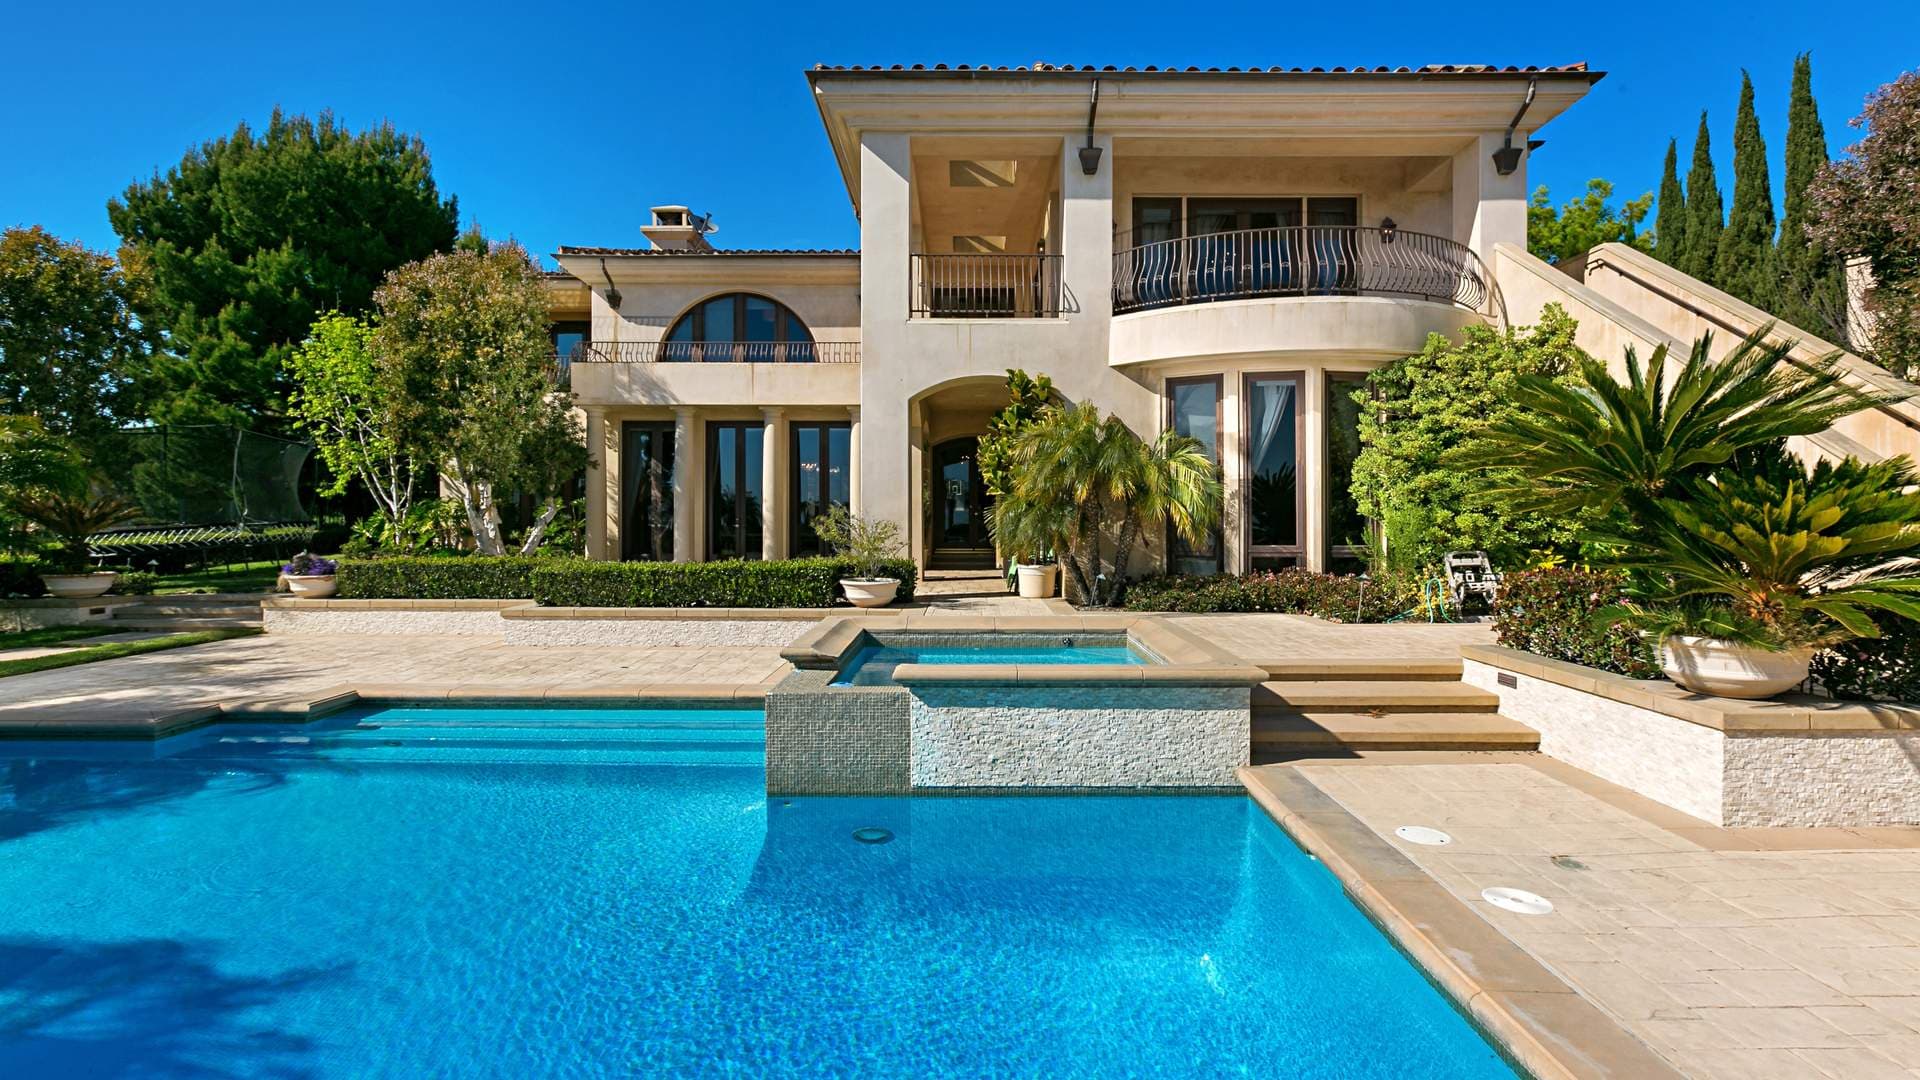 5 Bedroom Villa For Sale Newport Beach Lp01276 110b9bc86a306d00.jpg